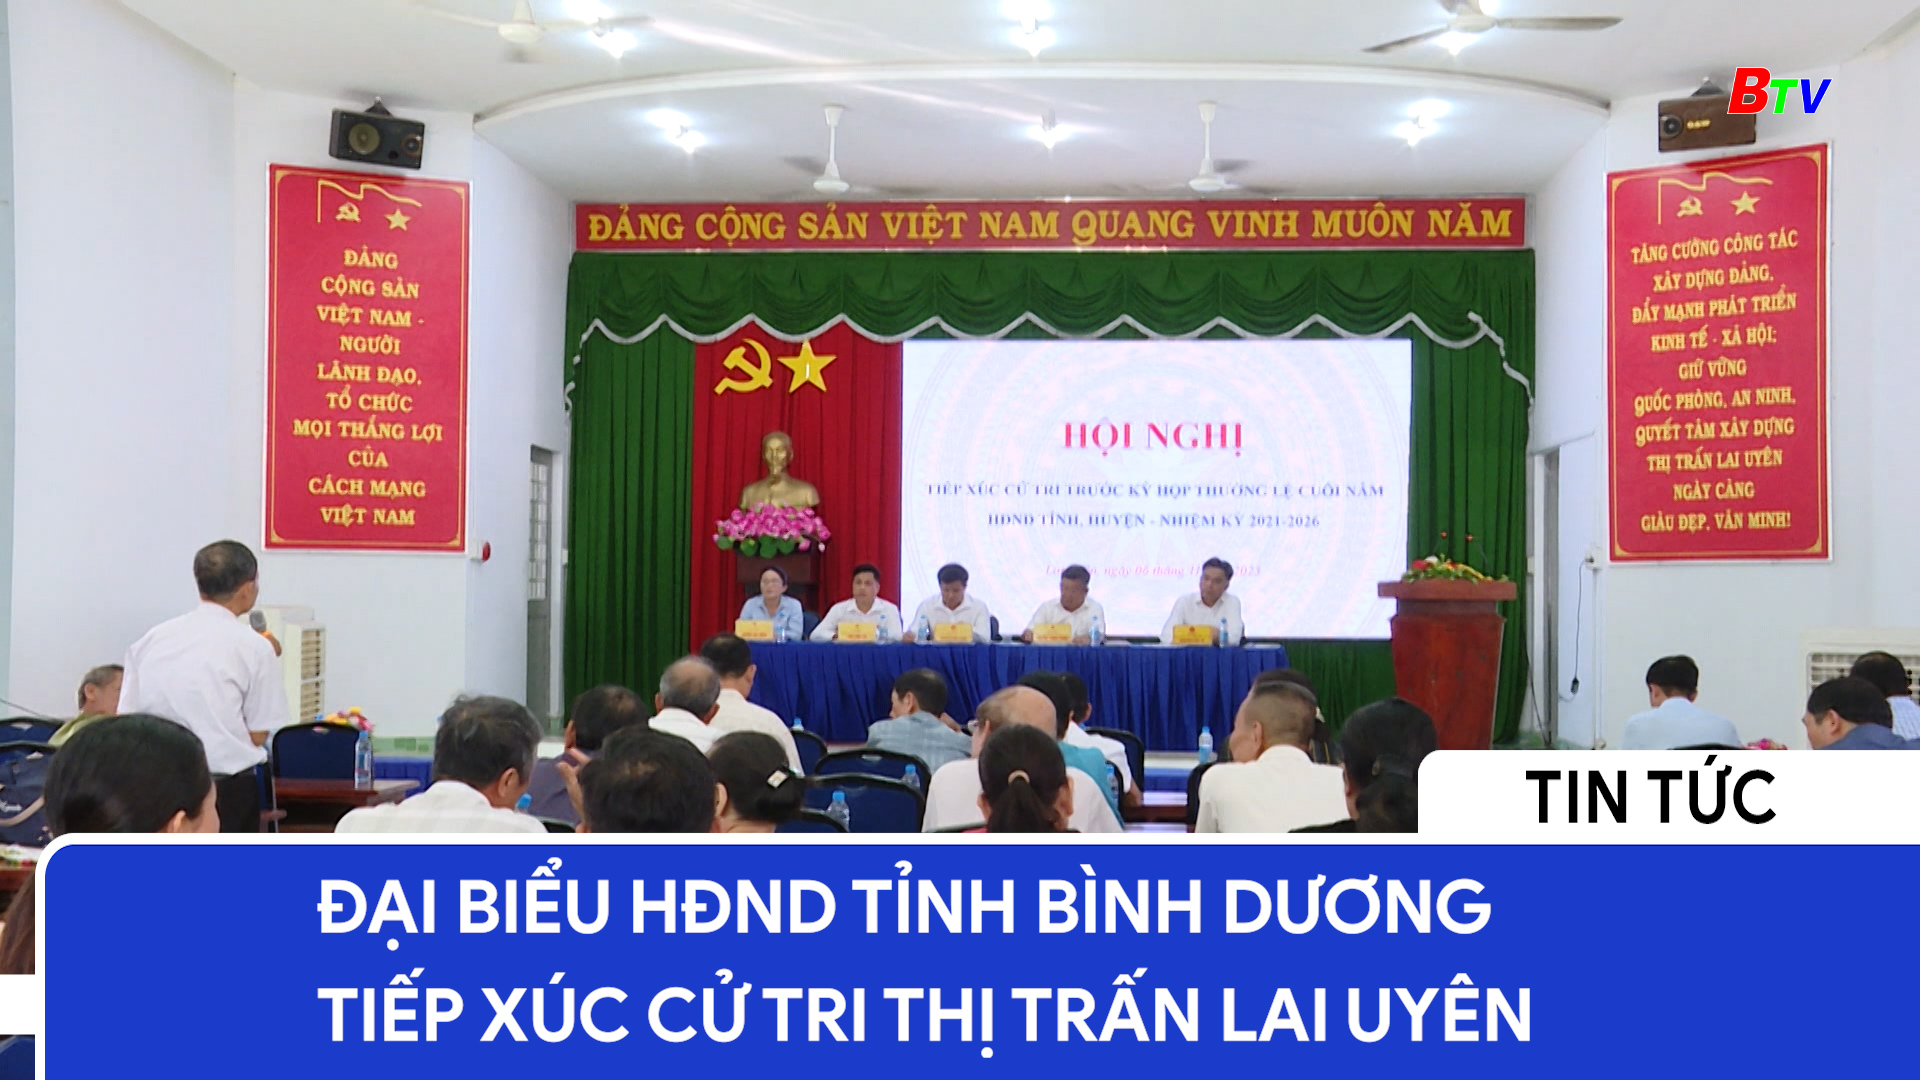 Đại biểu HĐND tỉnh Bình Dương tiếp xúc cử tri thị trấn Lai Uyên	